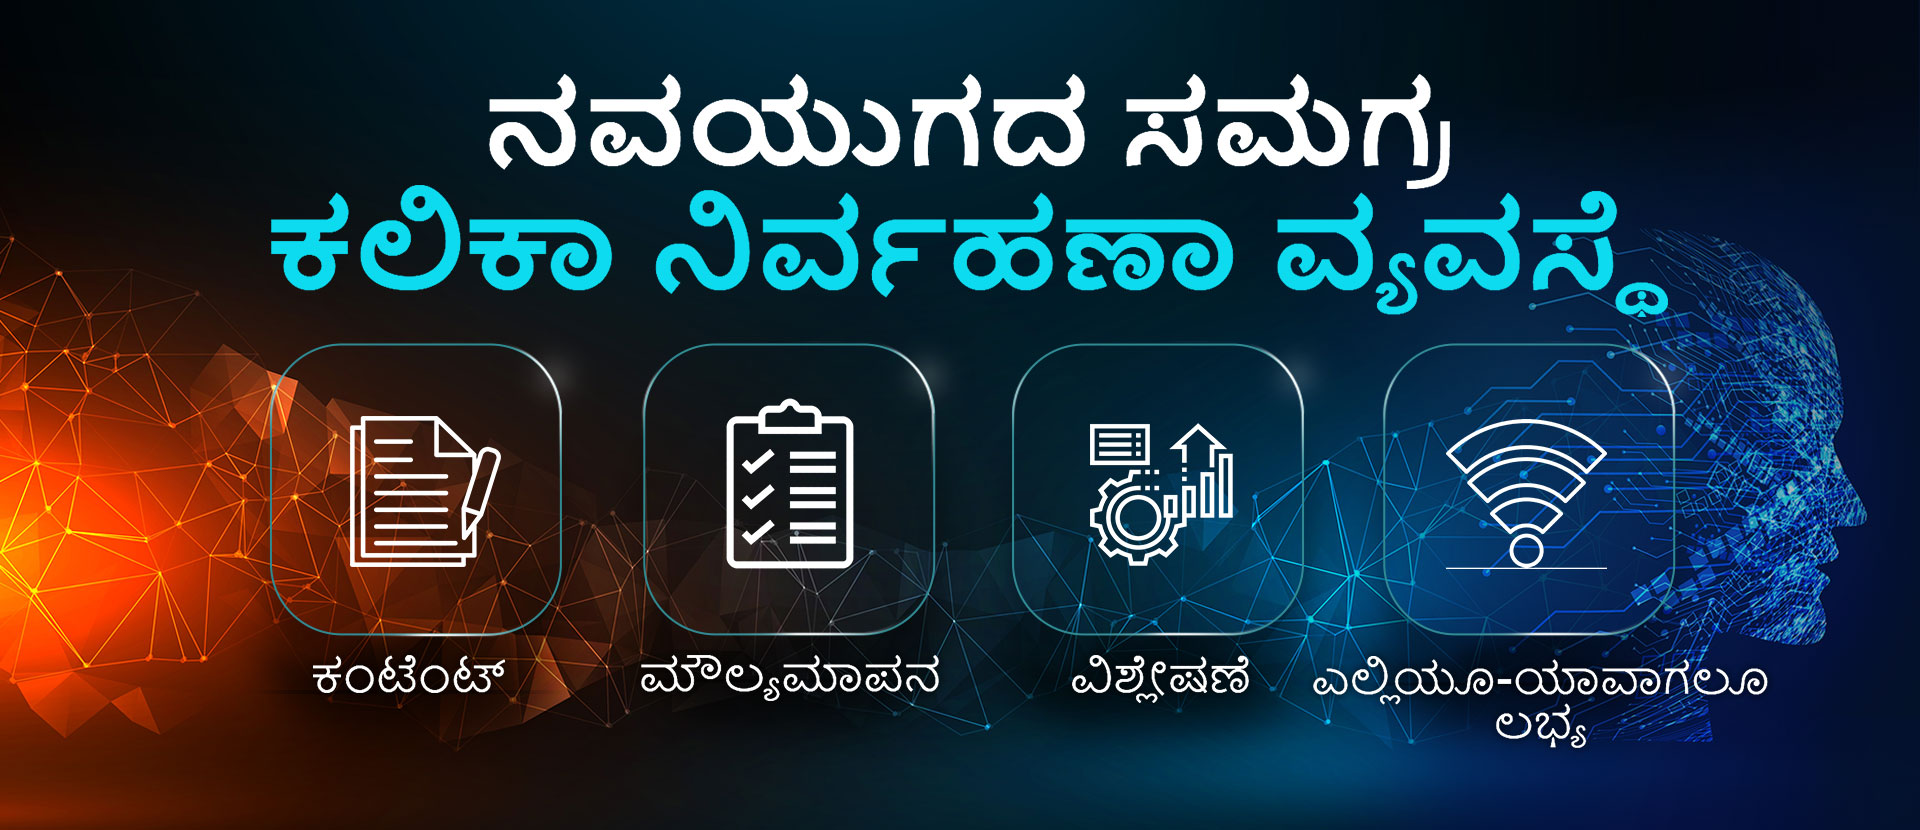 Karnataka LMS - Comprehensive Learning Management System